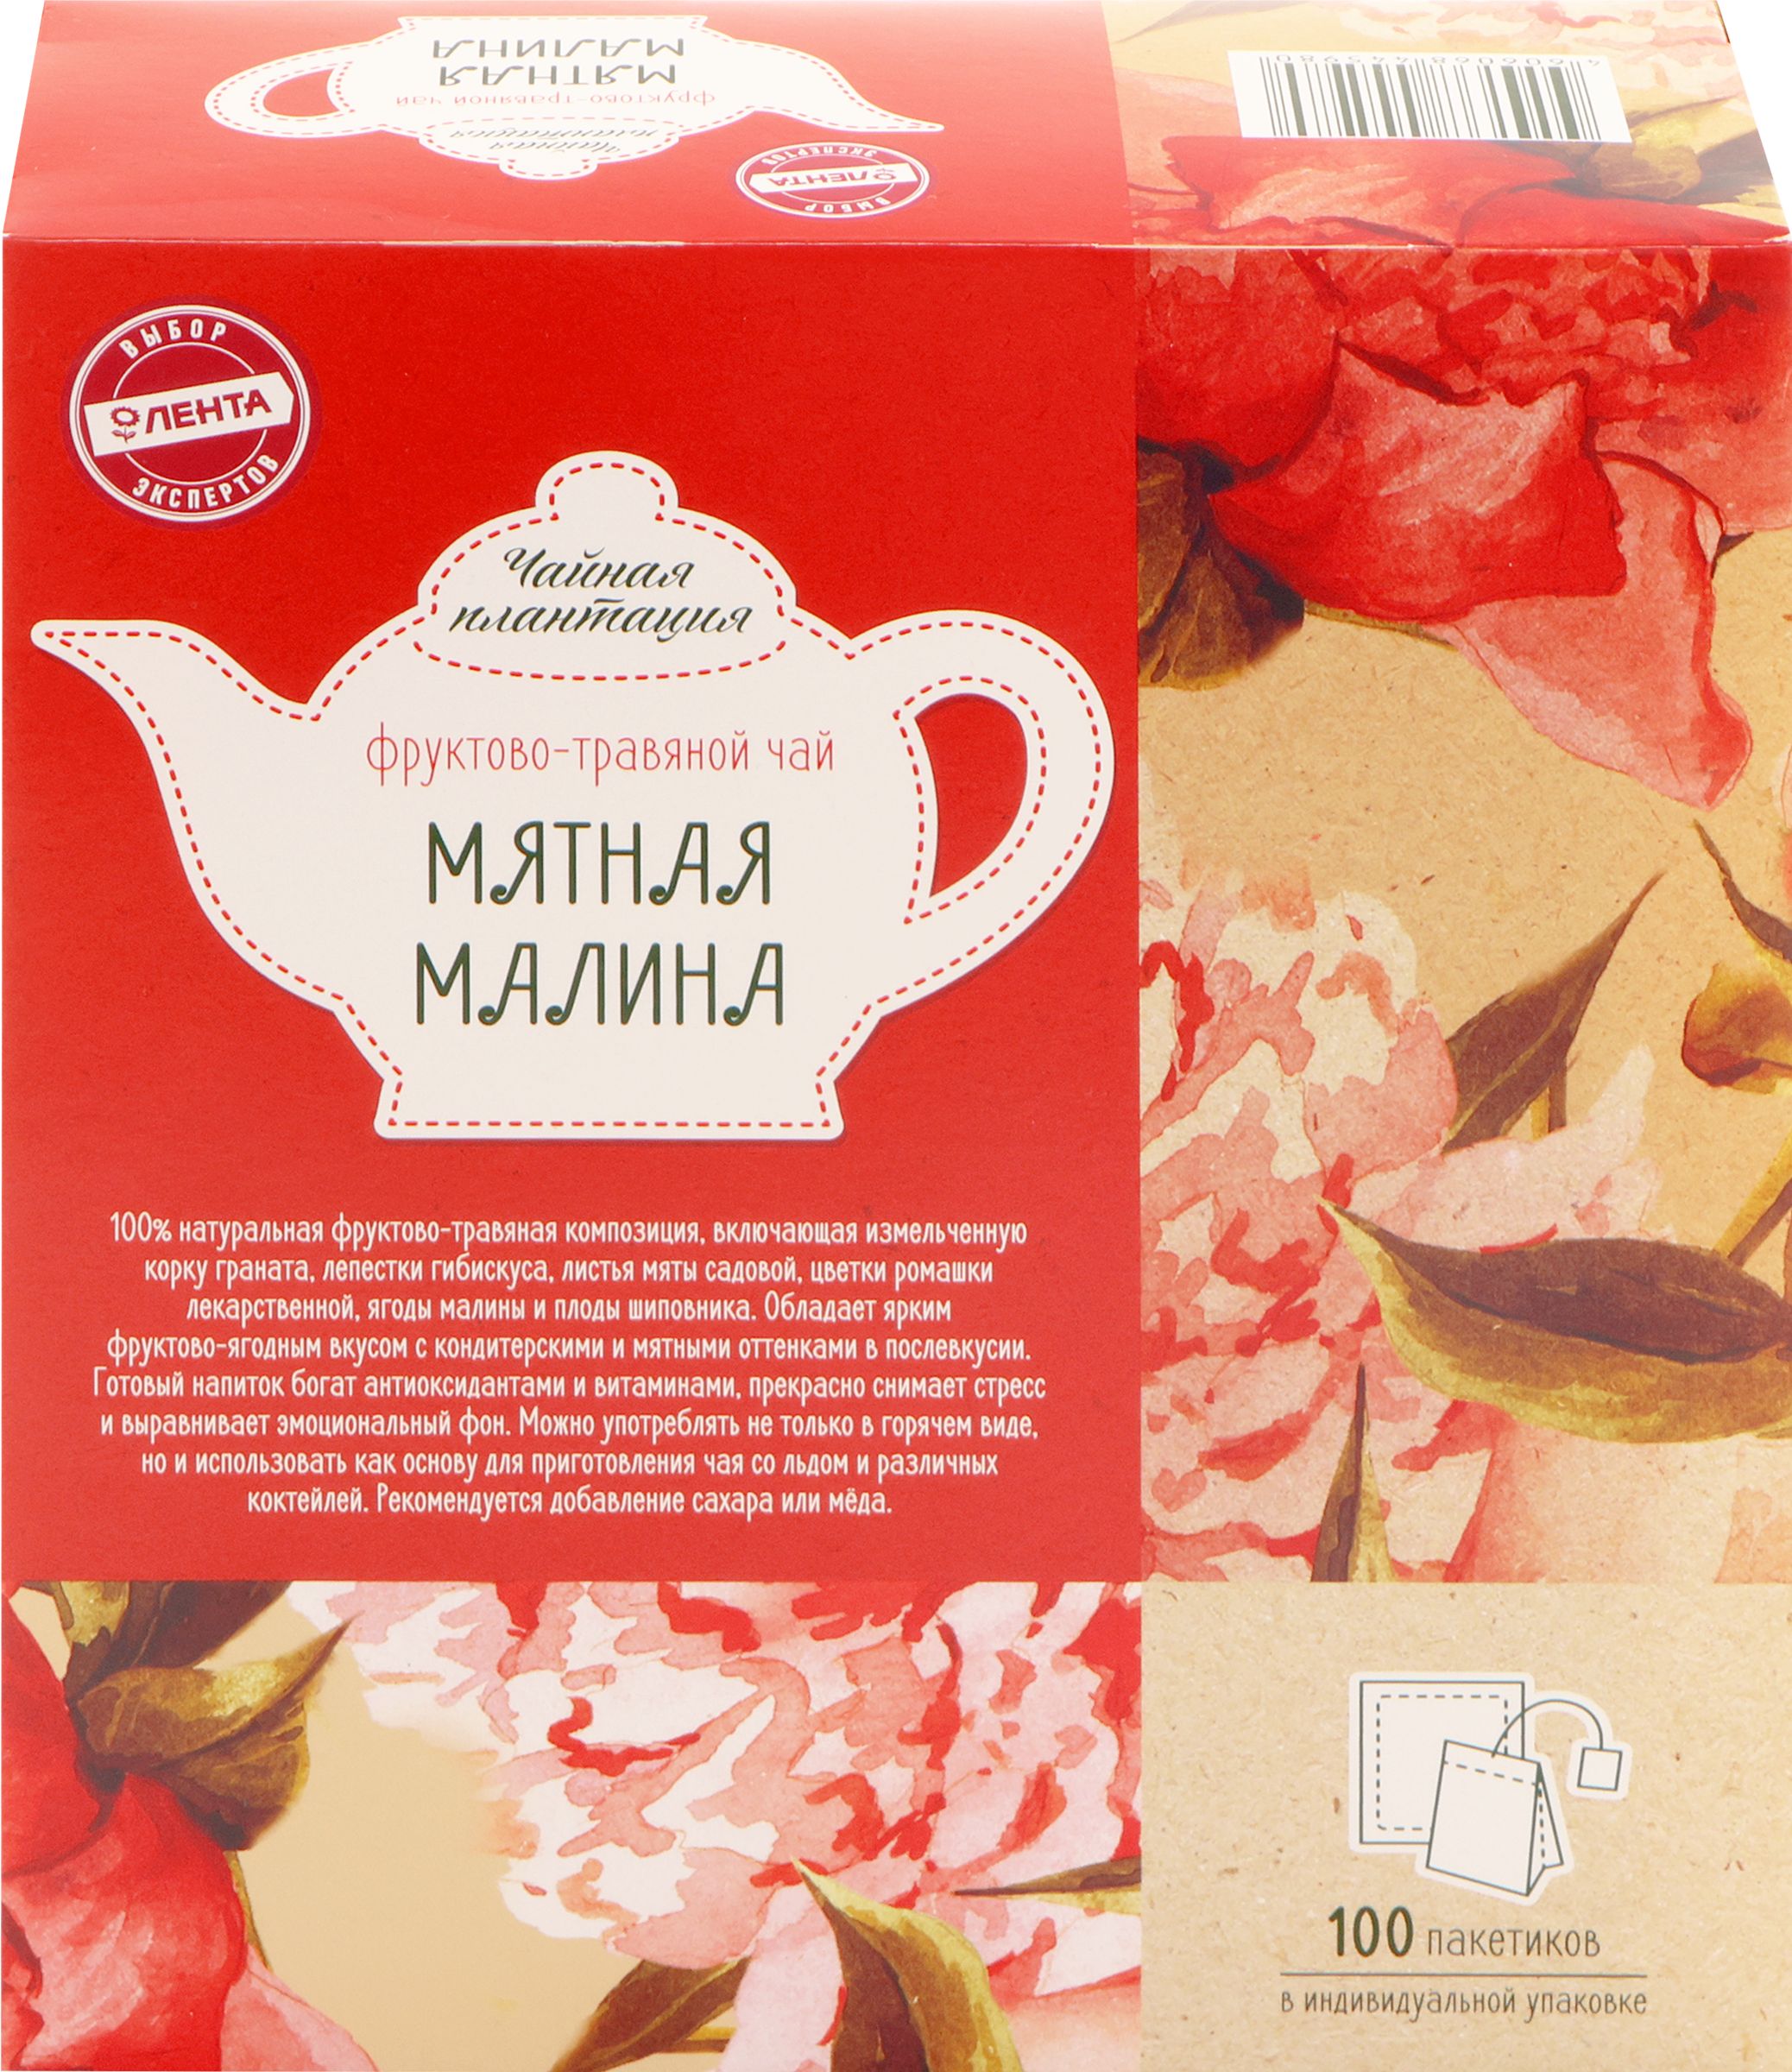 Чай в пакетиках 3 в 1. Травяной чай в пакетиках. Дешевый чай в пакетиках. Чай "малина-мята". Чай на травах в пакетиках.